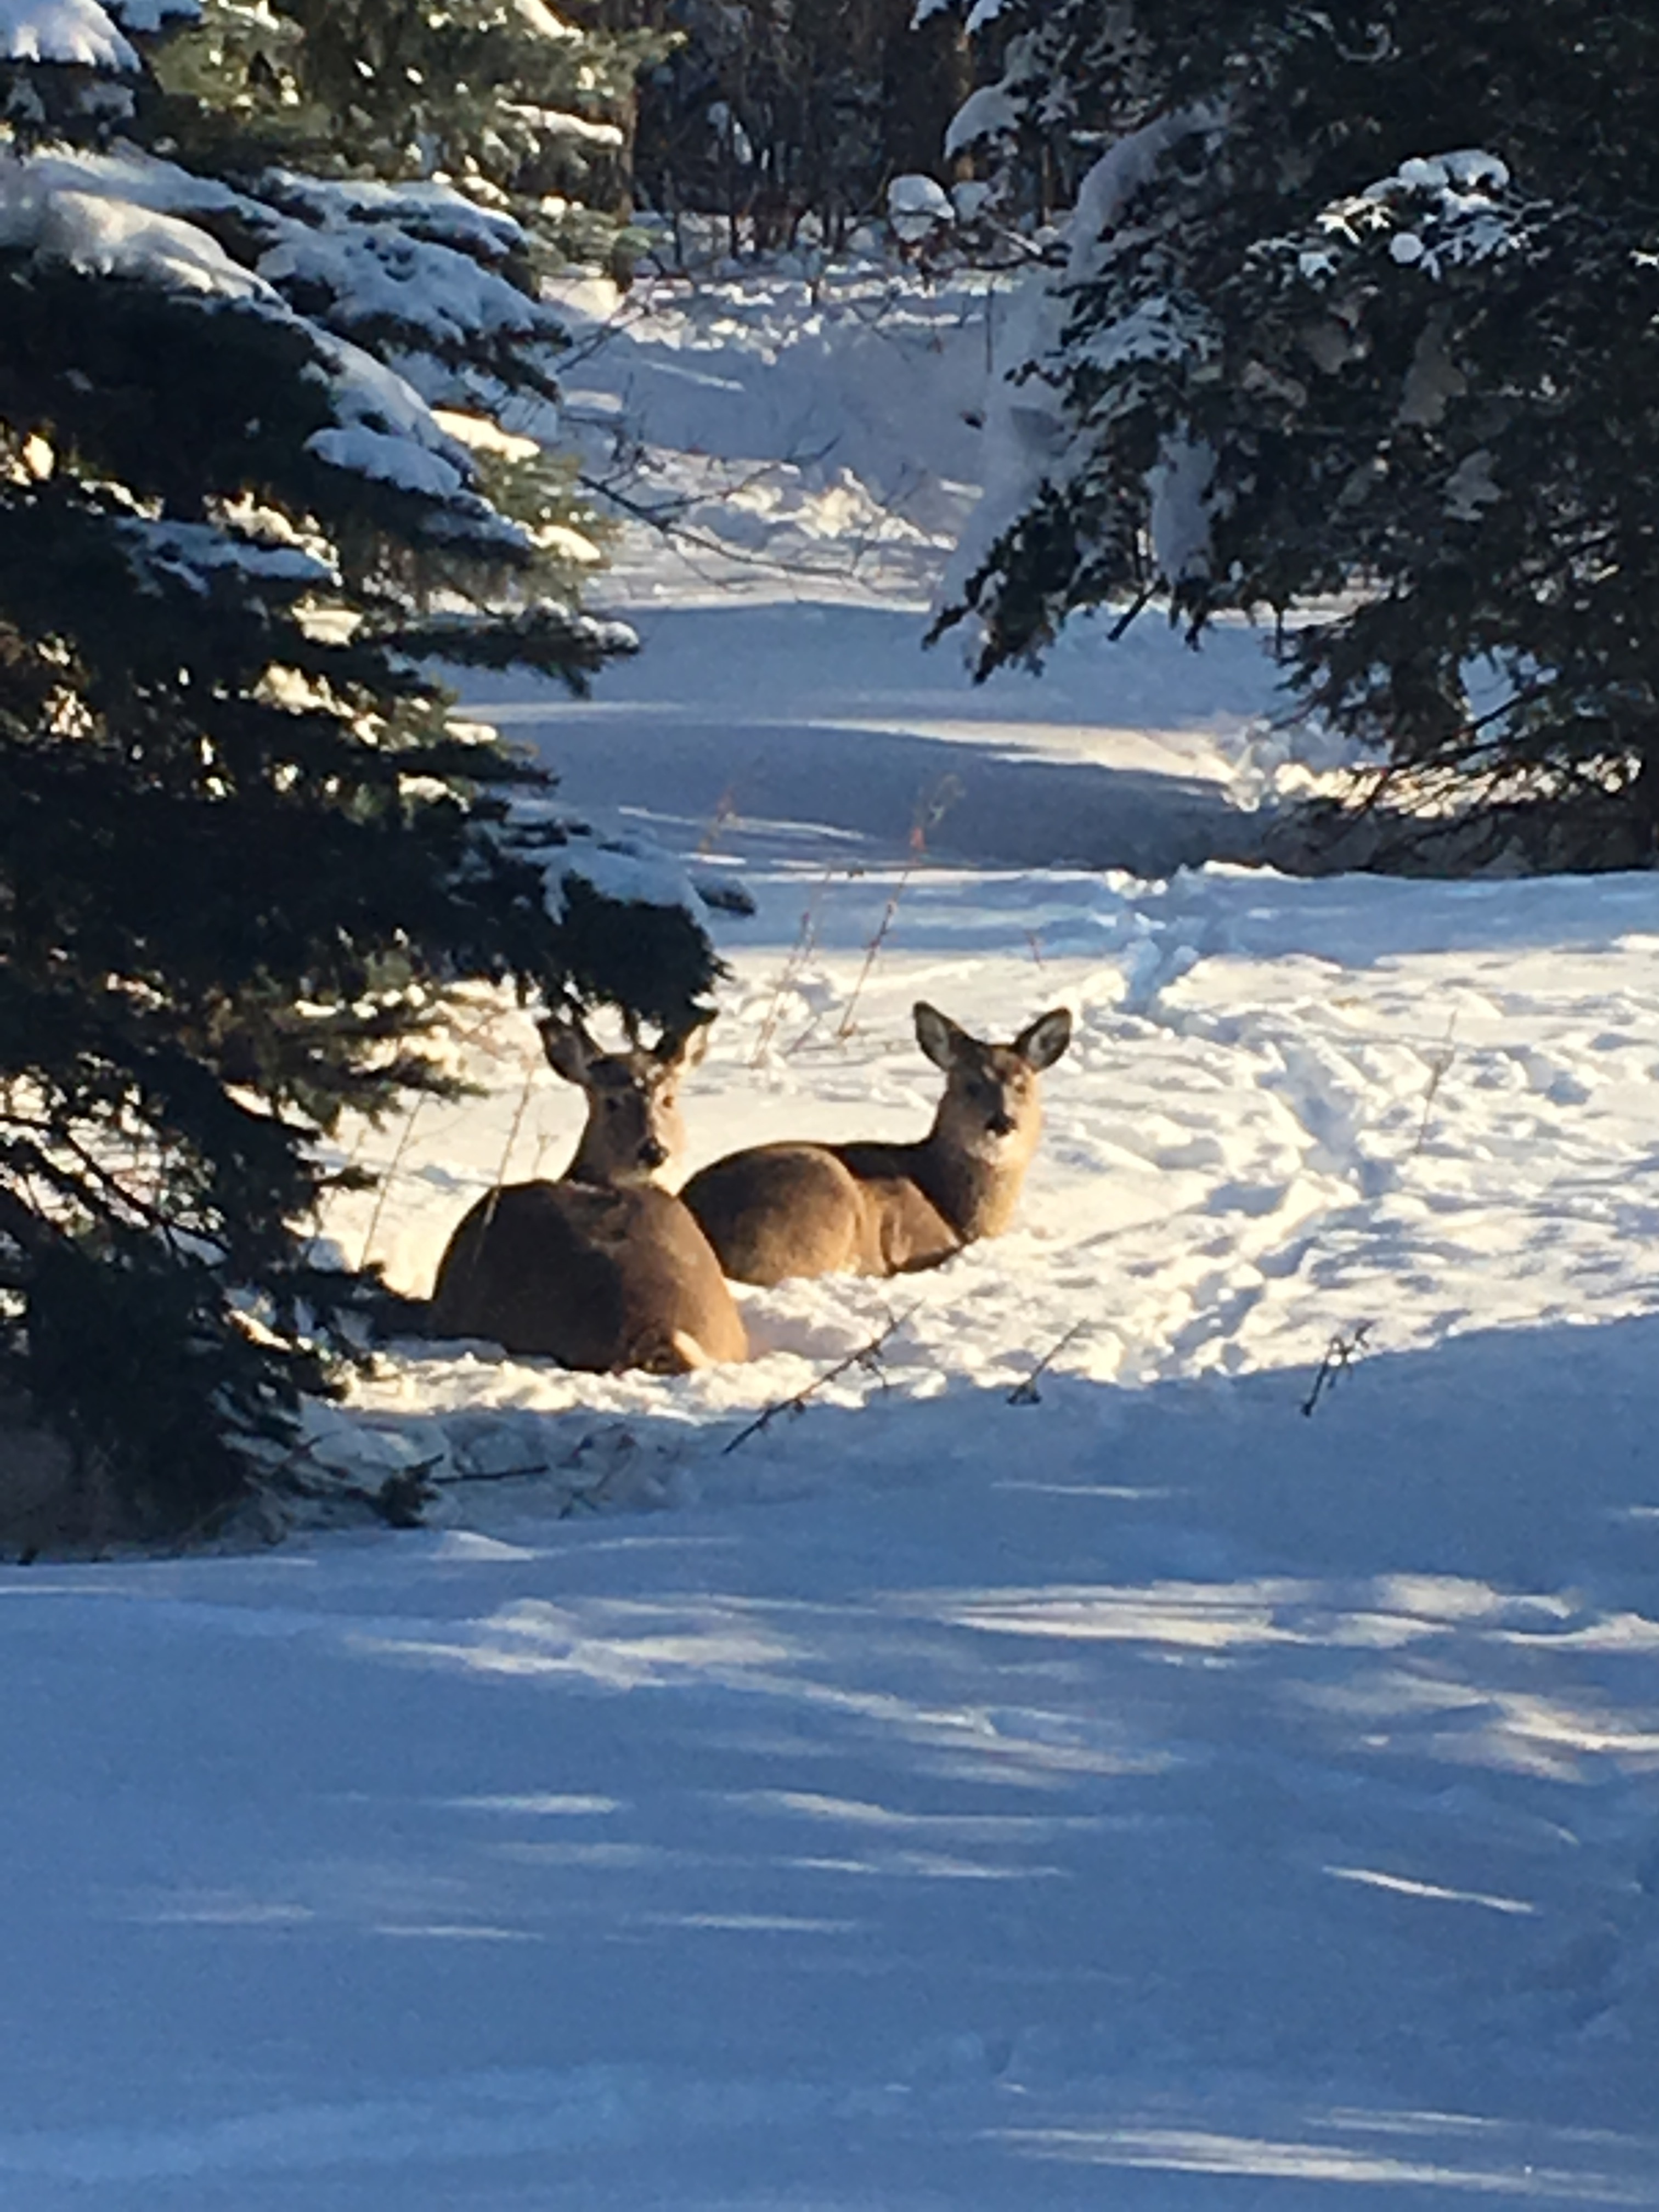 Two deer sitting in snow